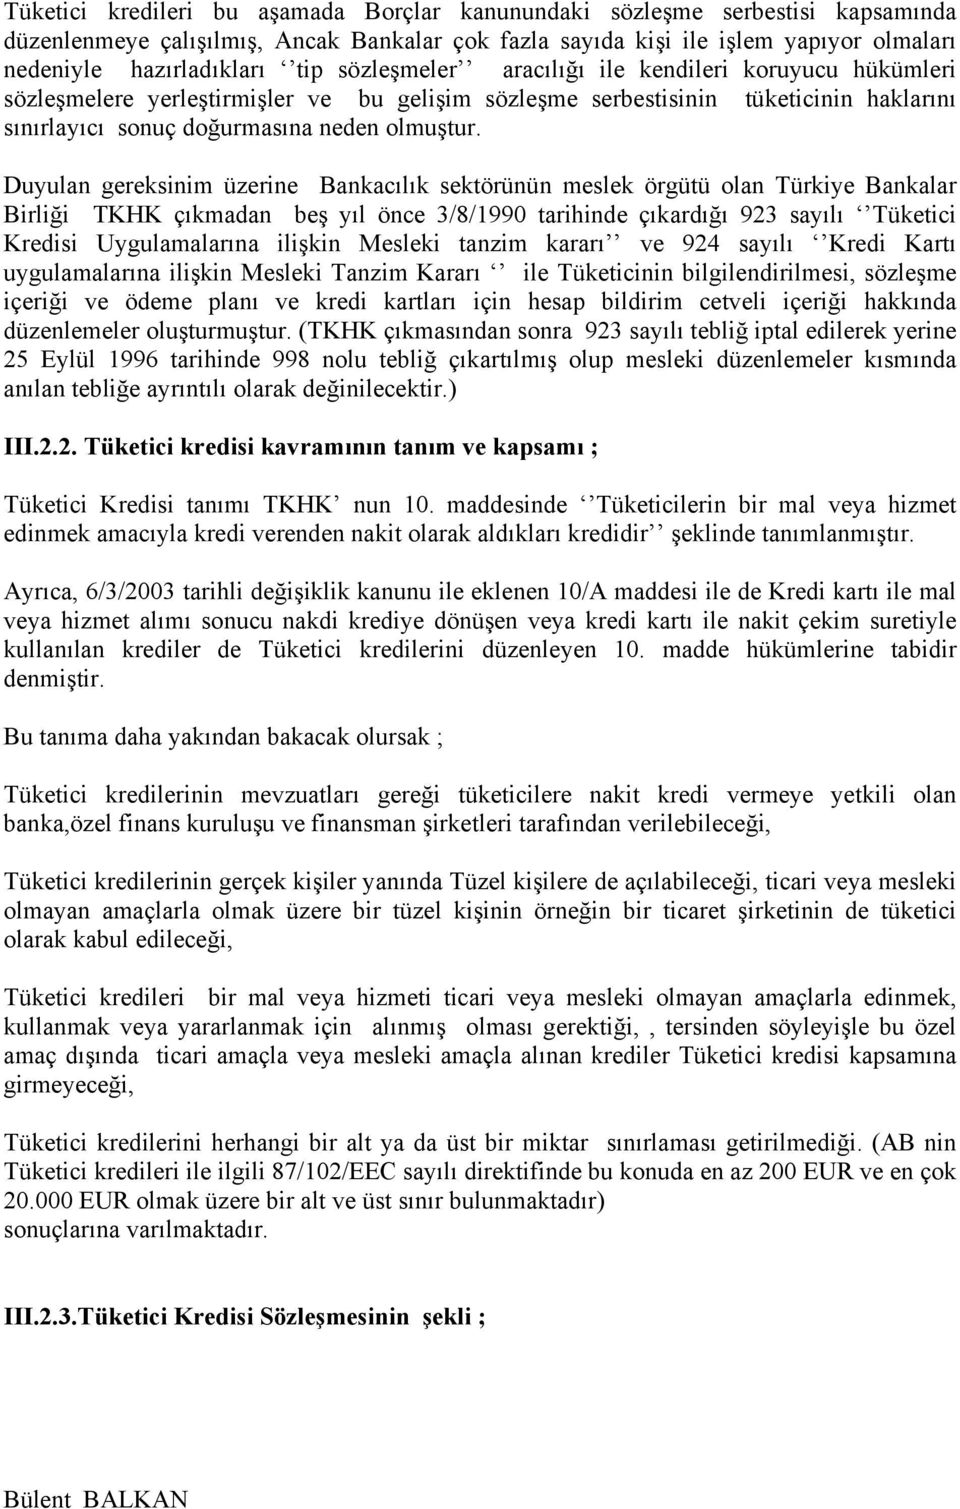 Duyulan gereksinim üzerine Bankacılık sektörünün meslek örgütü olan Türkiye Bankalar Birliği TKHK çıkmadan beş yıl önce 3/8/1990 tarihinde çıkardığı 923 sayılı Tüketici Kredisi Uygulamalarına ilişkin